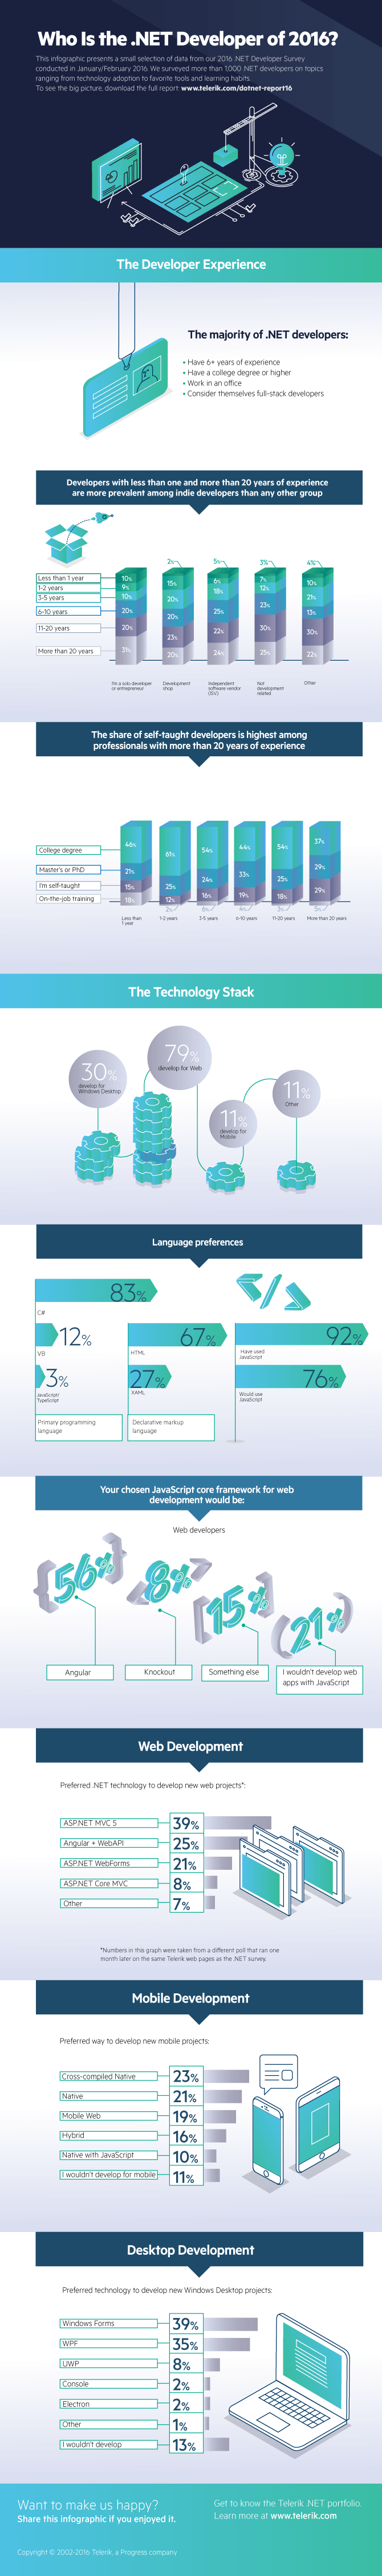 DotNET-developer-survey-infographic-2016